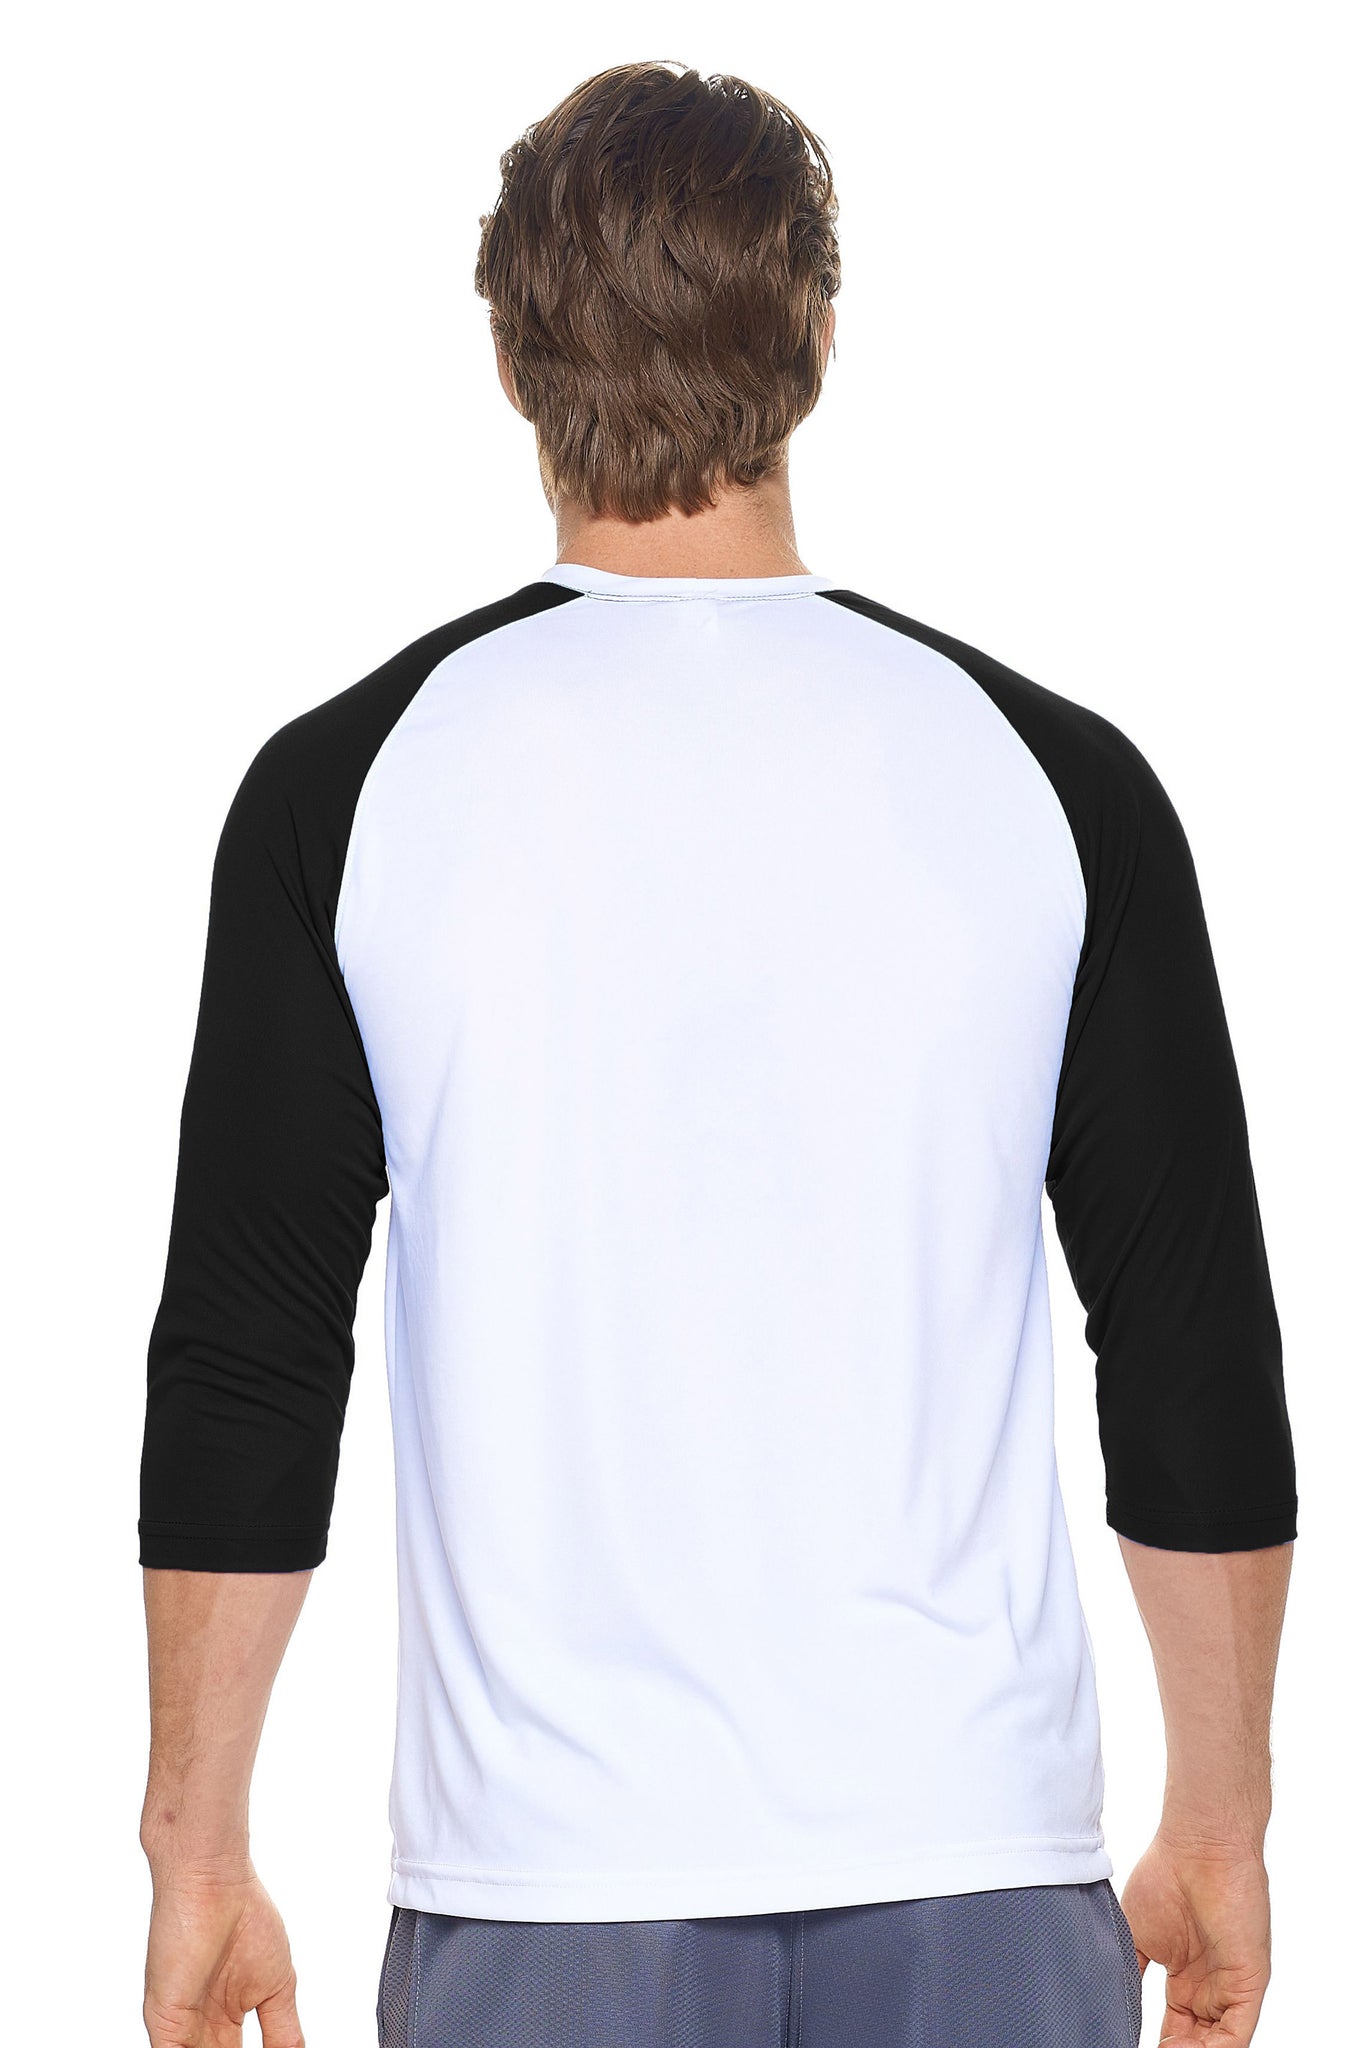 Expert Brand Wholesale Men's Long Sleeve Raglan Colorblock Fitness Shirt Made in USA white black 3#white-black